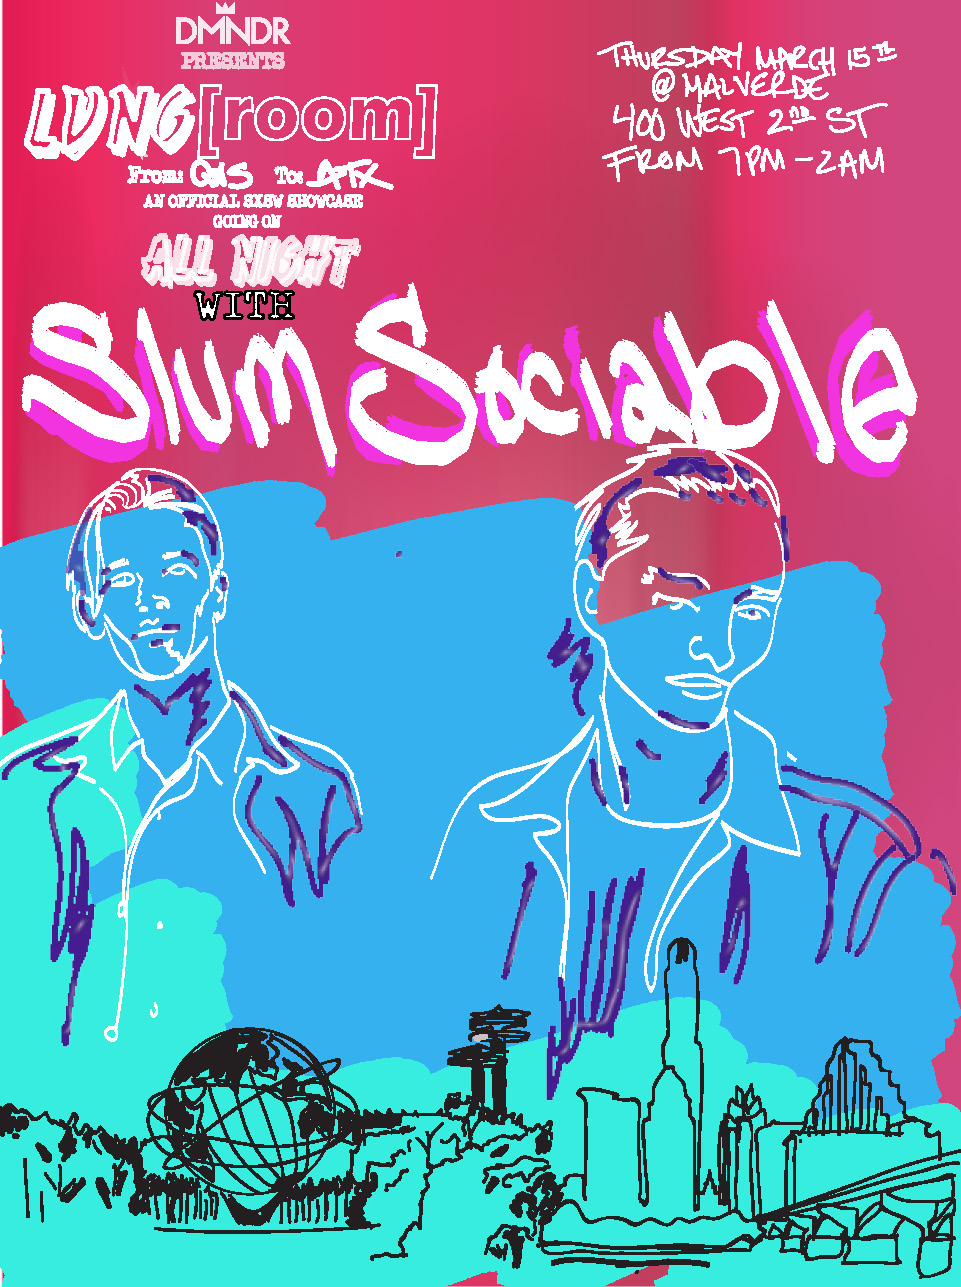 Slum Sociable will perform at SXSW DMNDR Showcase @Malverde March 15 at 7 pm